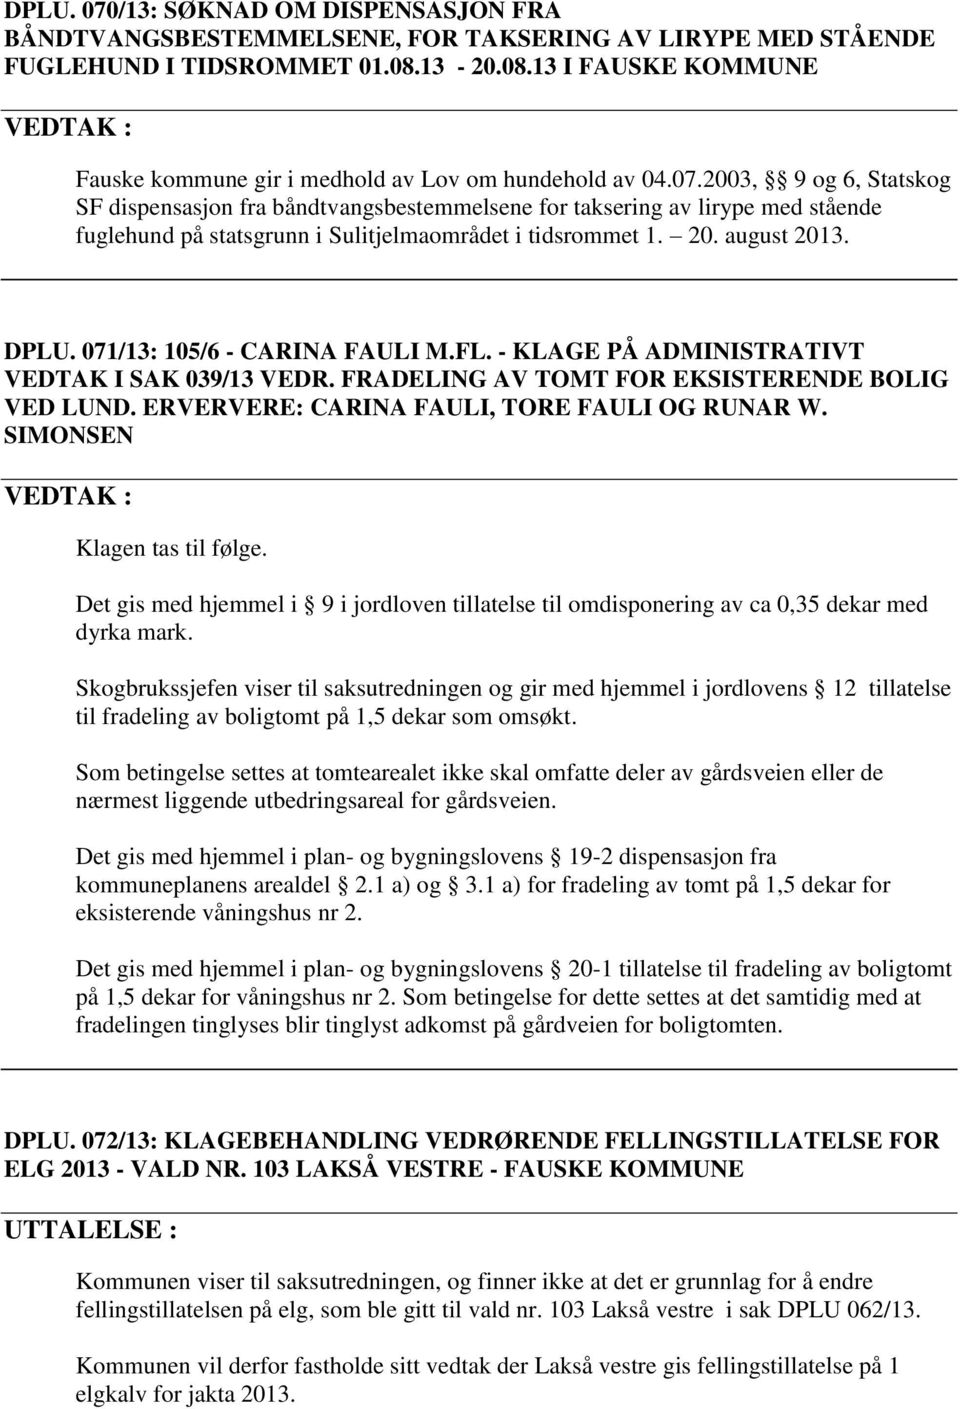 2003, 9 og 6, Statskog SF dispensasjon fra båndtvangsbestemmelsene for taksering av lirype med stående fuglehund på statsgrunn i Sulitjelmaområdet i tidsrommet 1. 20. august 2013. DPLU.